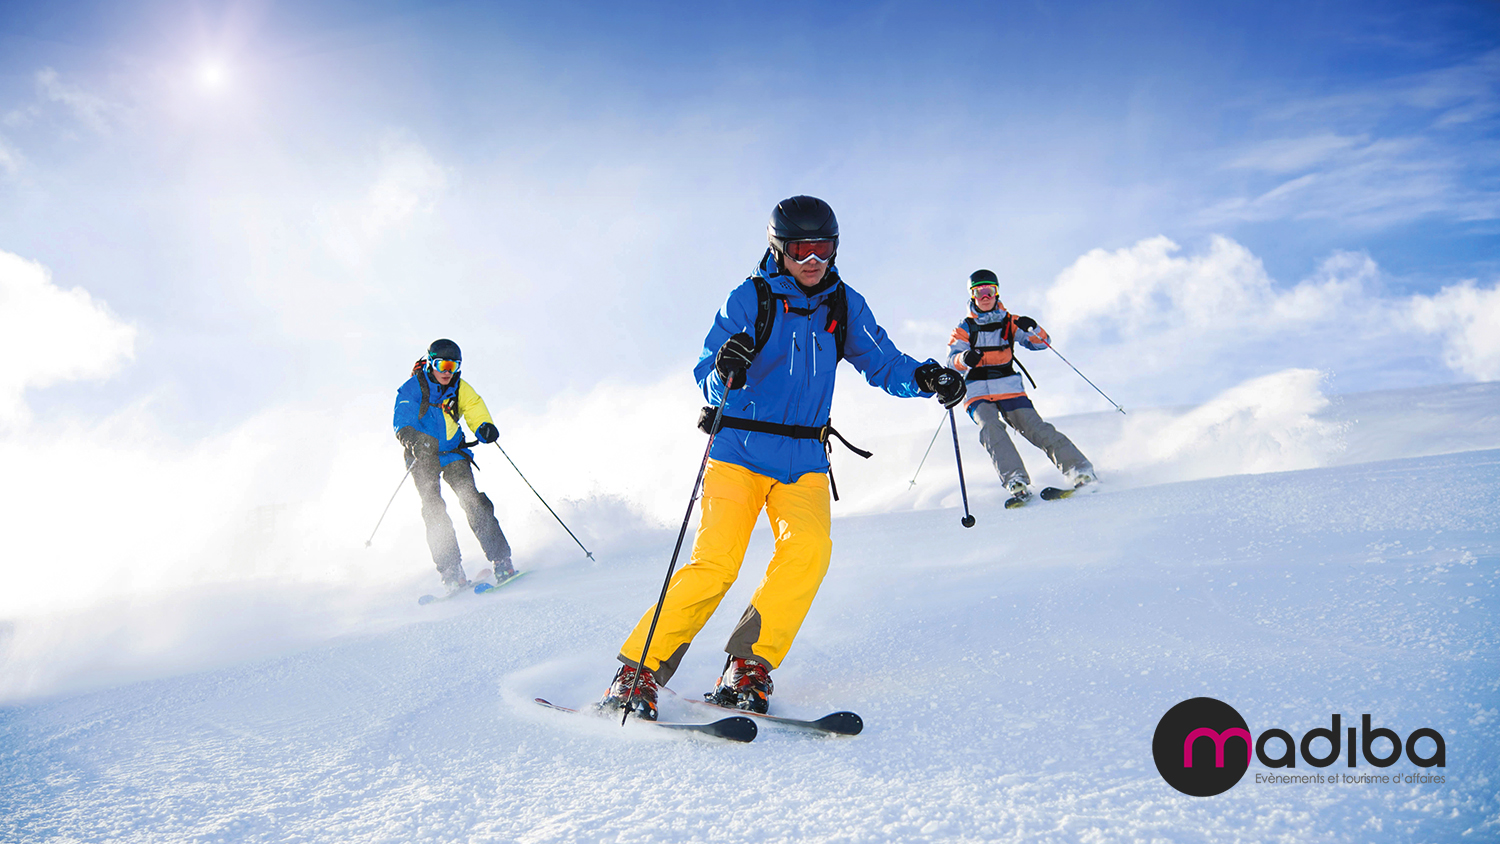 ../uploads/partez au ski avec votre entreprise pour votre team building - agence evenementielle madiba.jpg